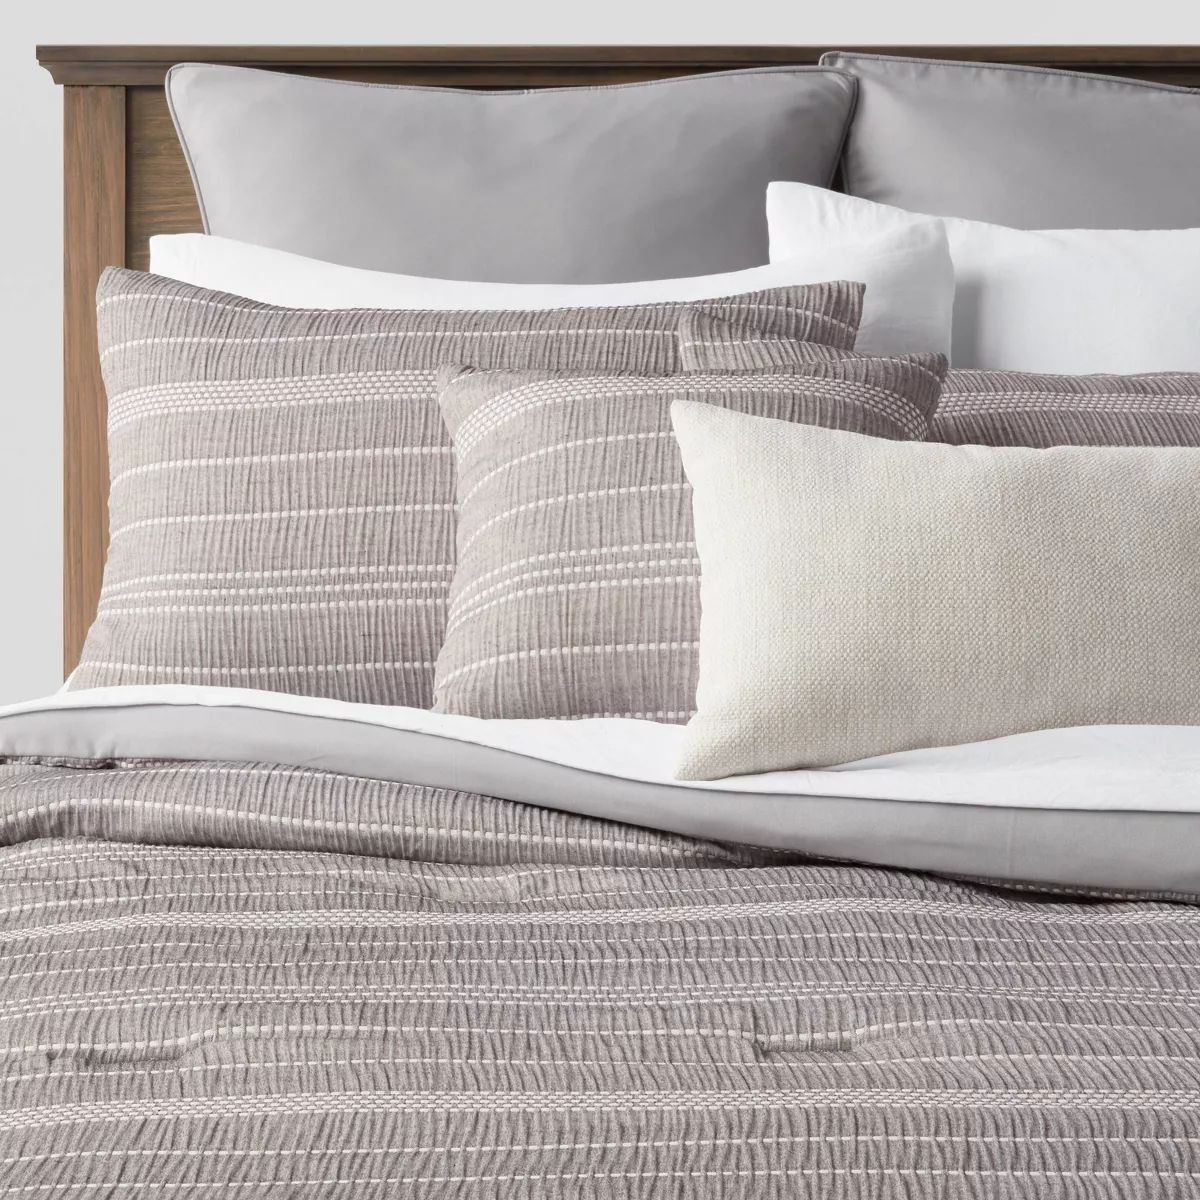 12pc Chambray Matelasse Stripe Comforter & Sheet Bedding Set Gray - Threshold™ | Target